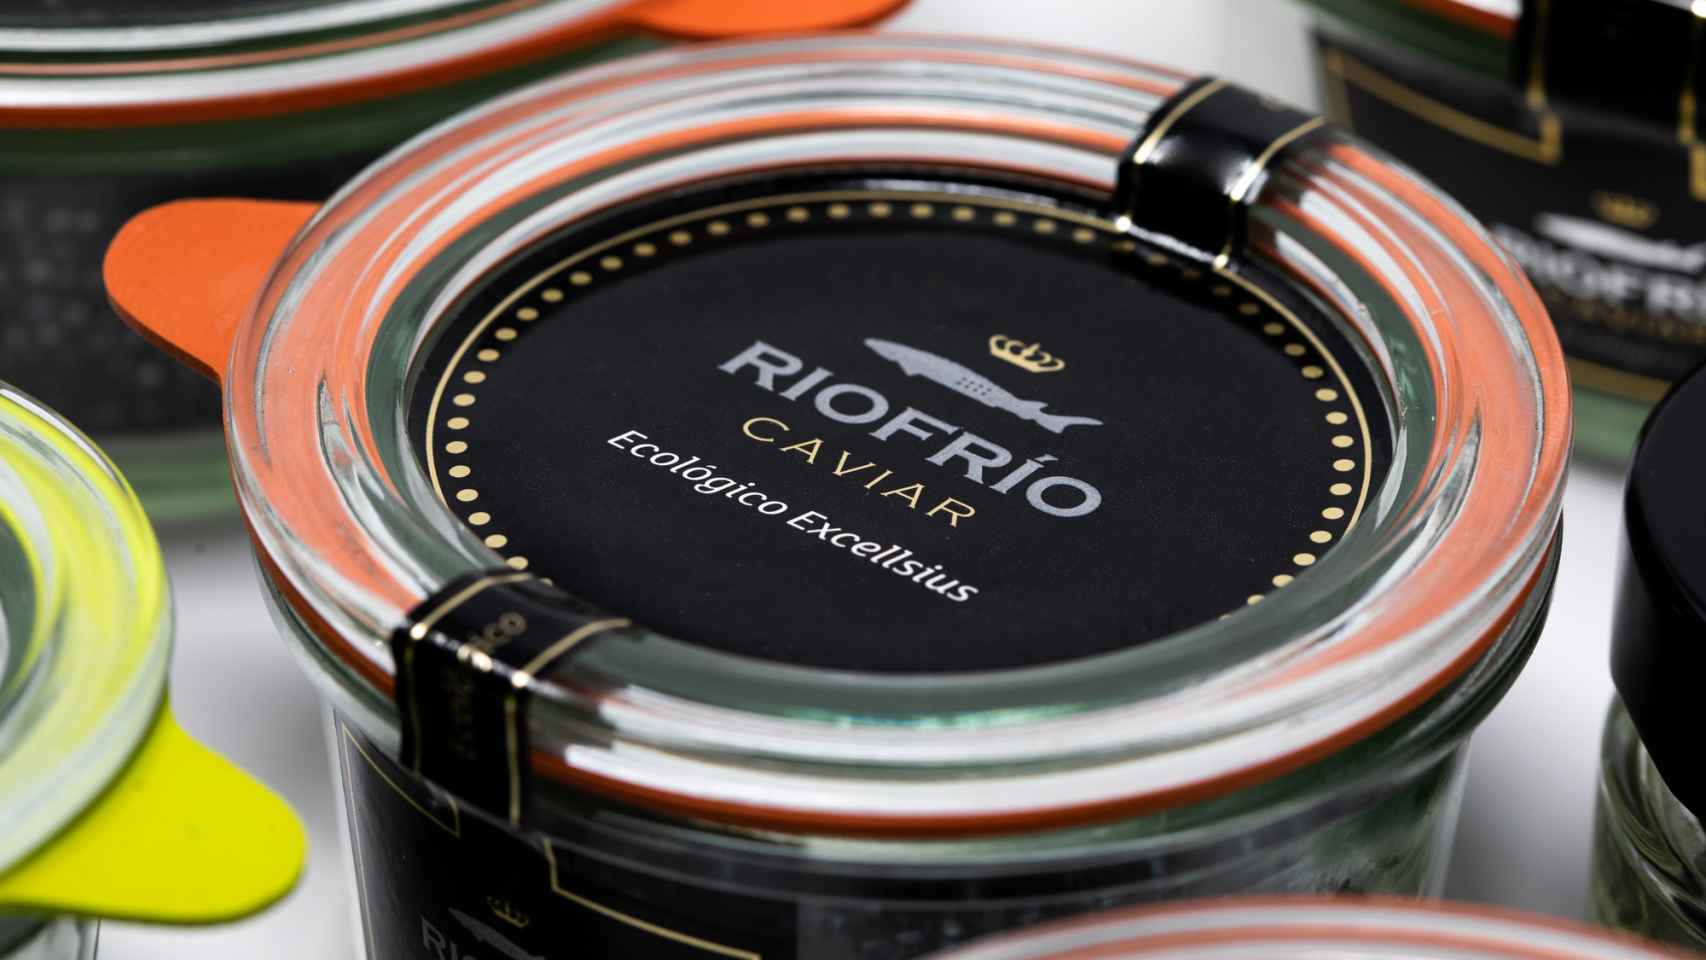 Caviar Riofrío Ecológico de Grupo Osborne.